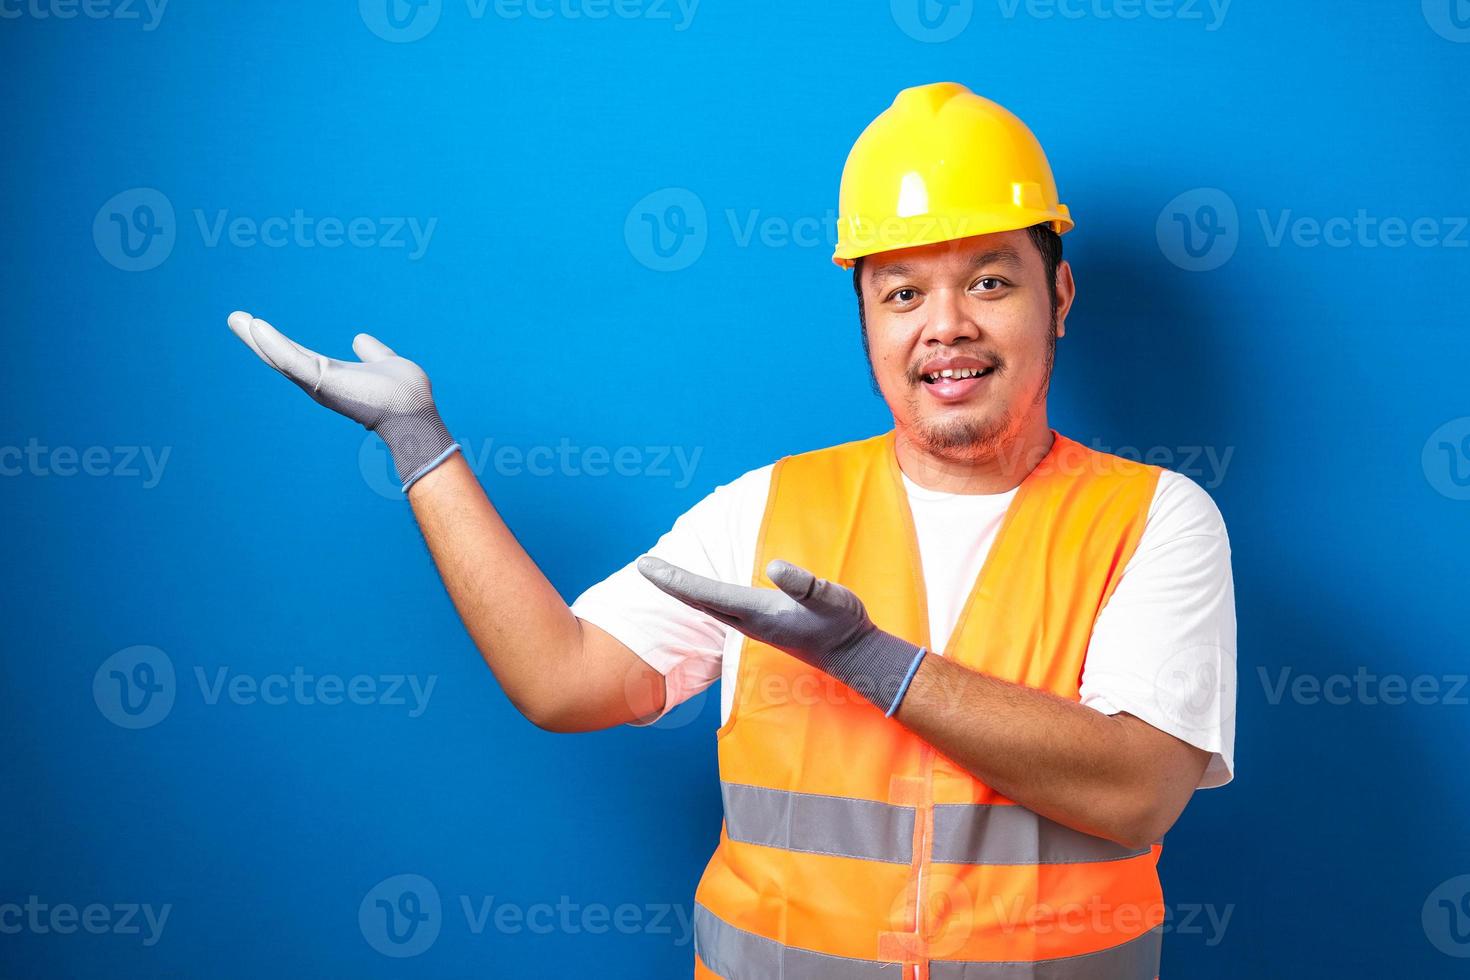 dikke Aziatische arbeider die een helm draagt, presenteert iets in zijn hand terwijl hij zijwaarts kijkt foto